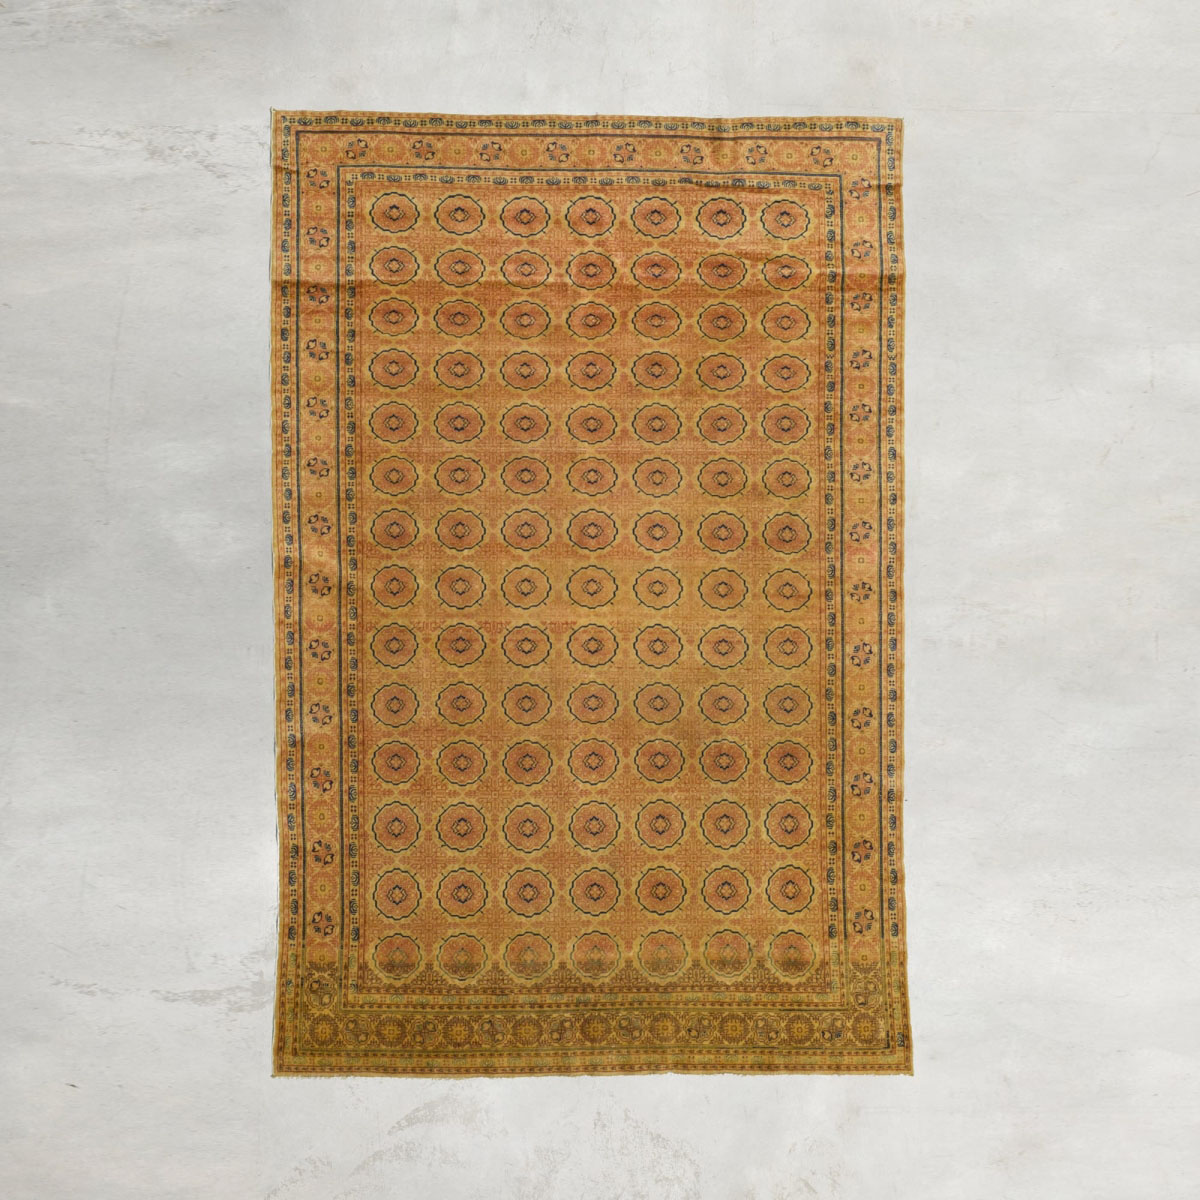  Sivas carpet | 295 x 200 cm Other antique carpets  pic-1